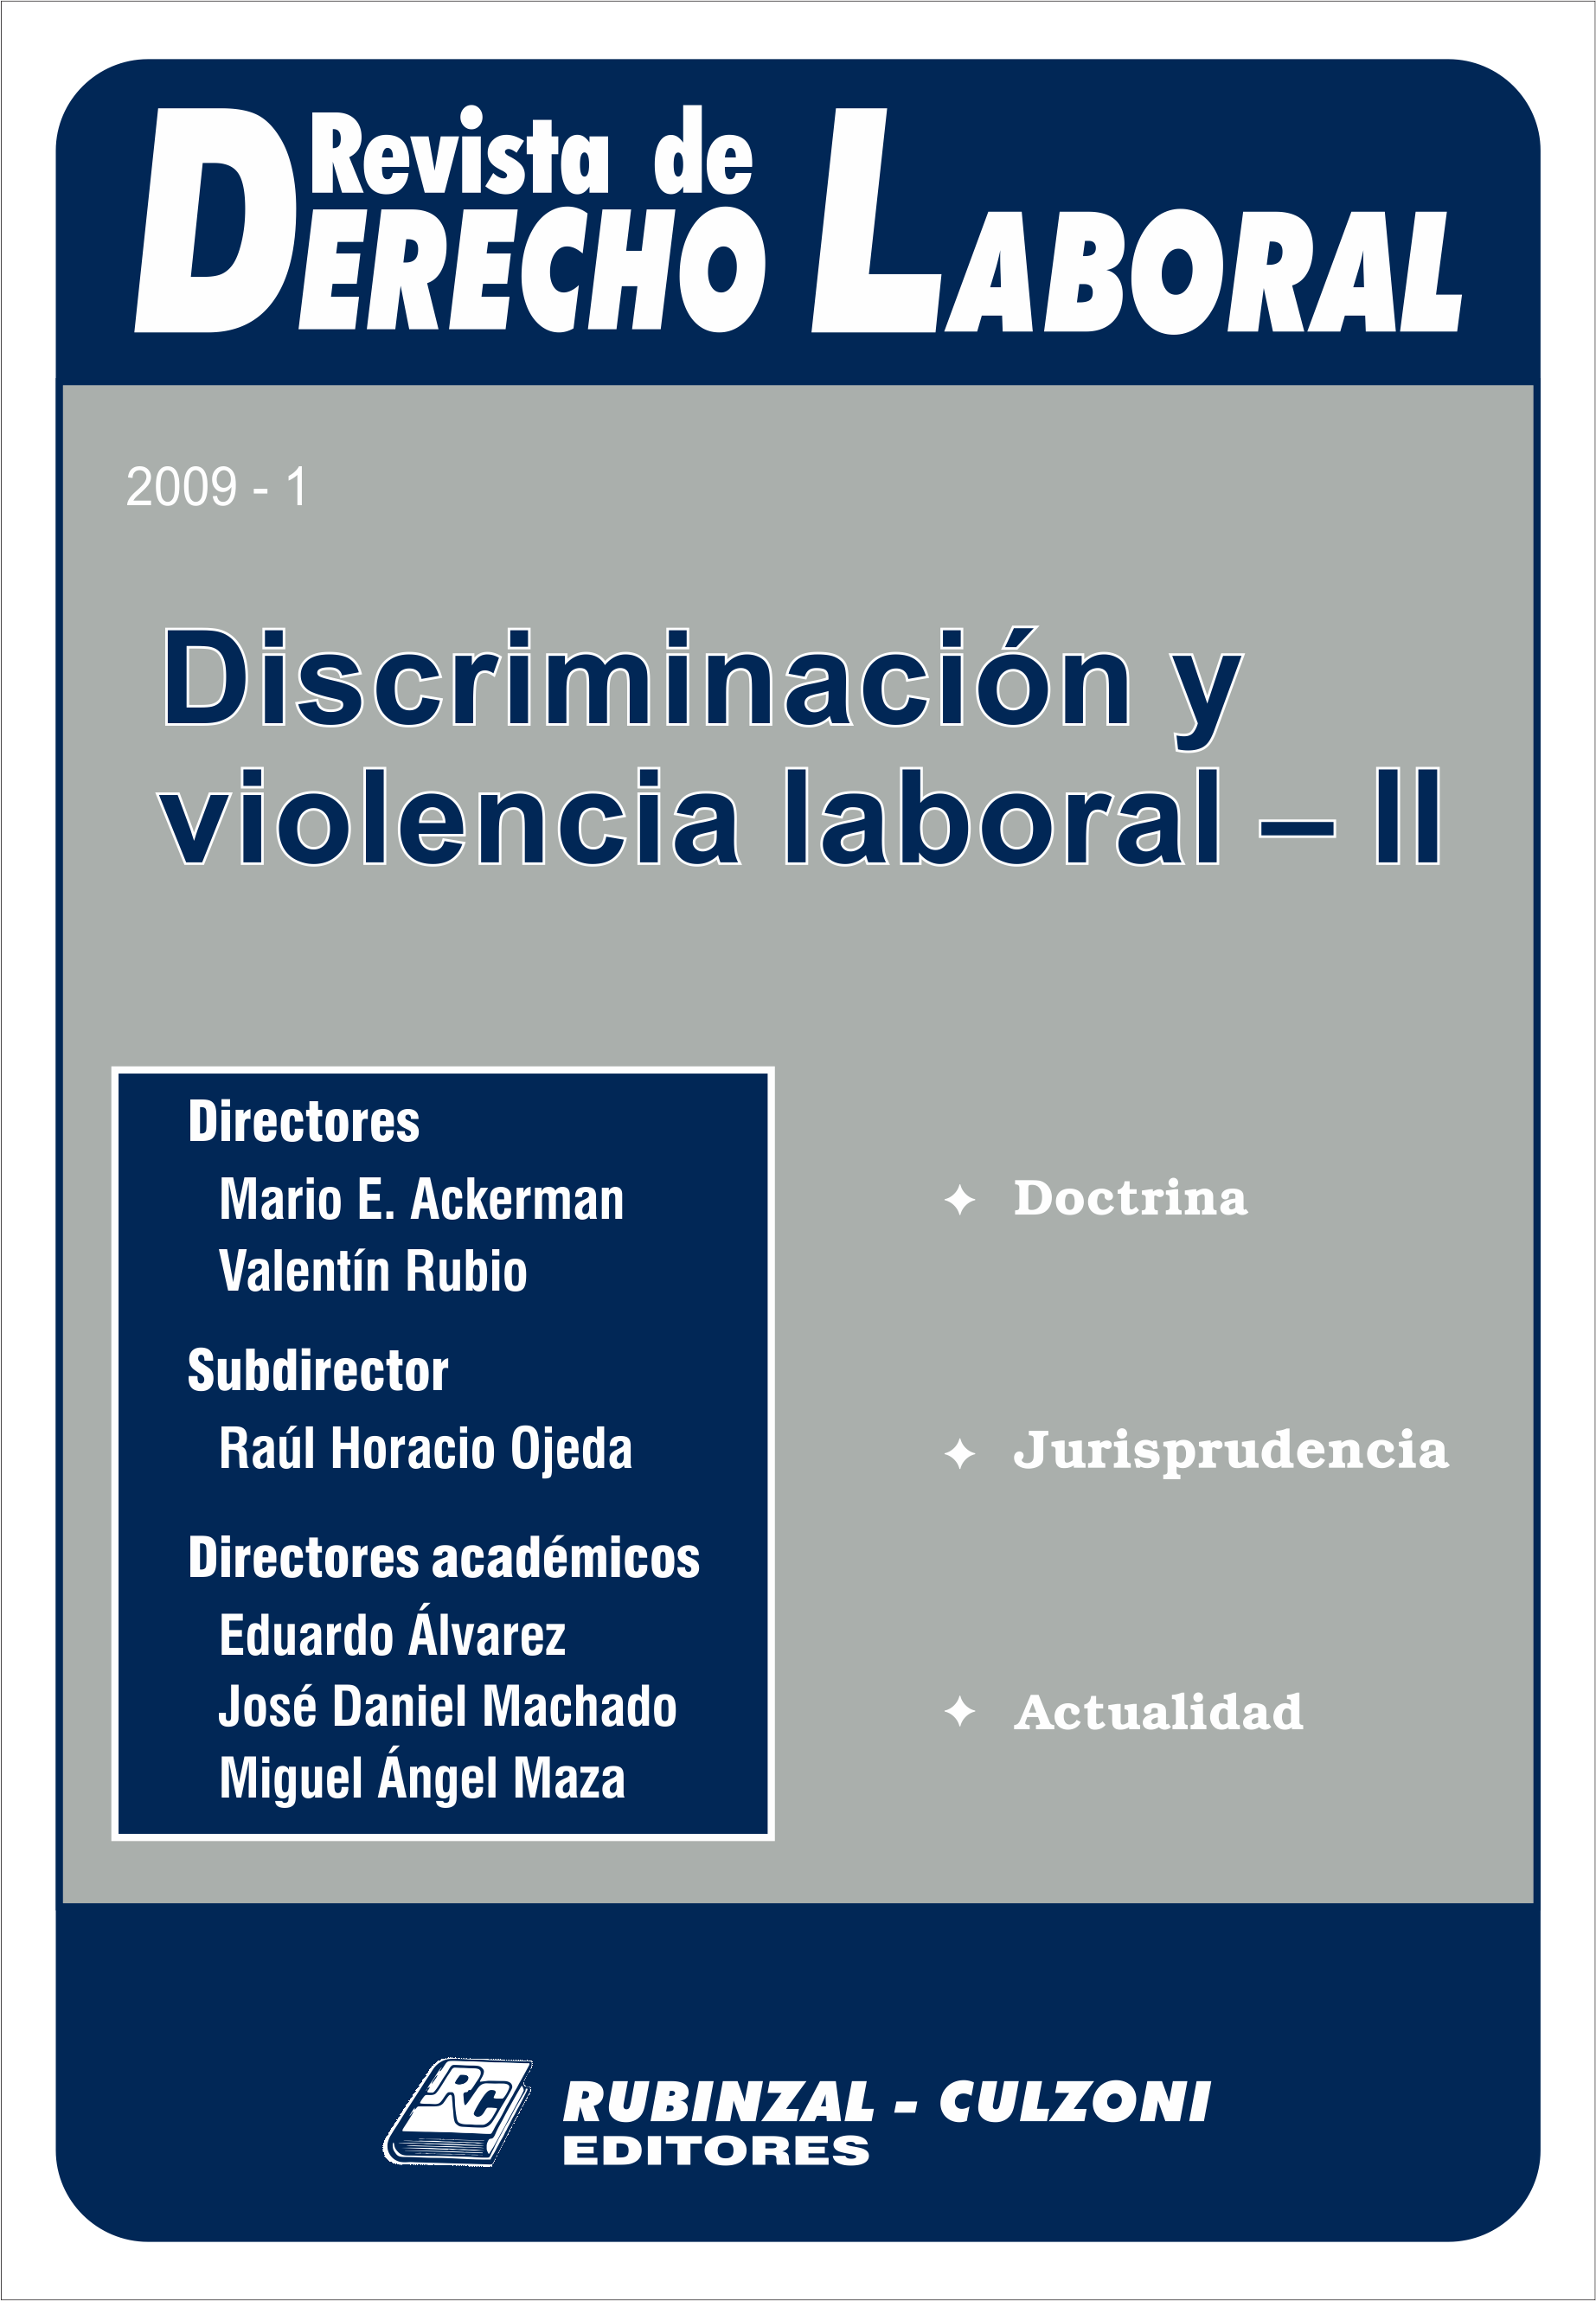 Revista de Derecho Laboral - Discriminación y violencia laboral - II